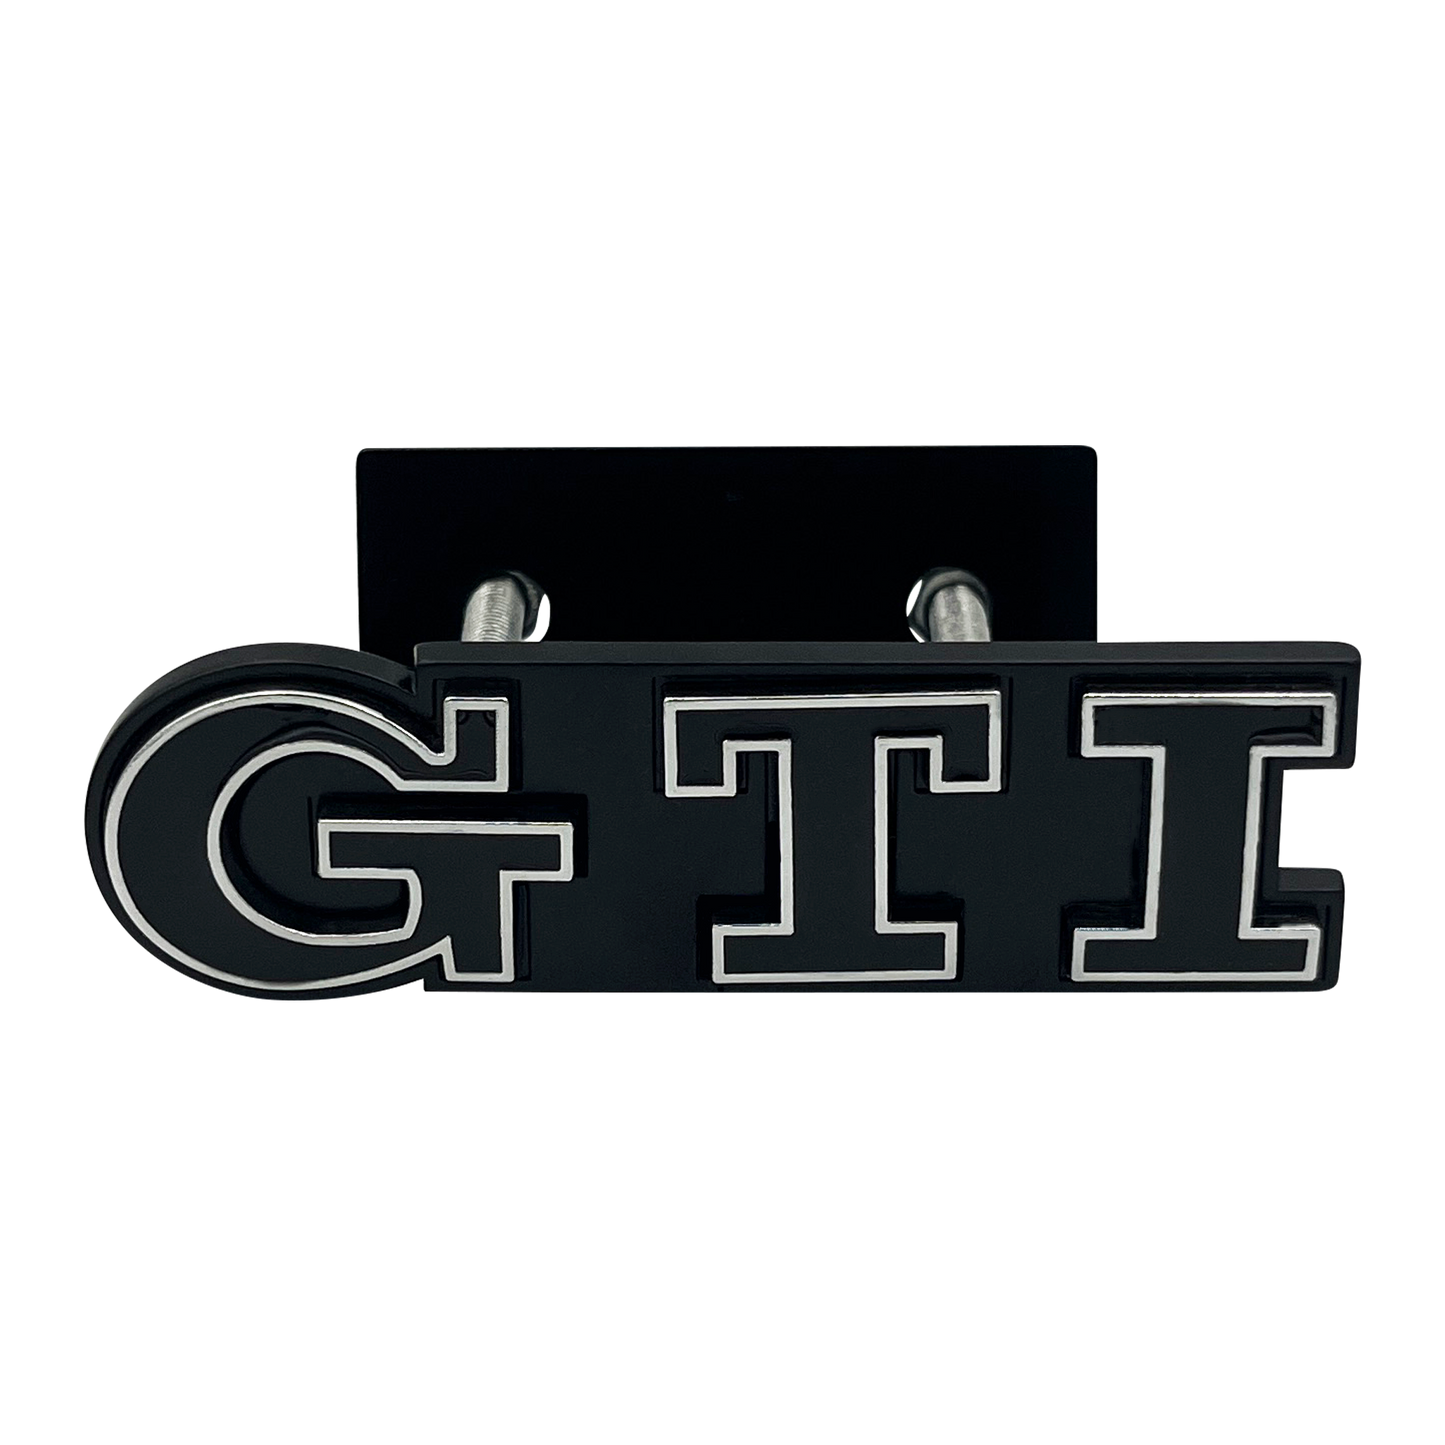 Sort & Chrome VW GTI Front Emblem Badge